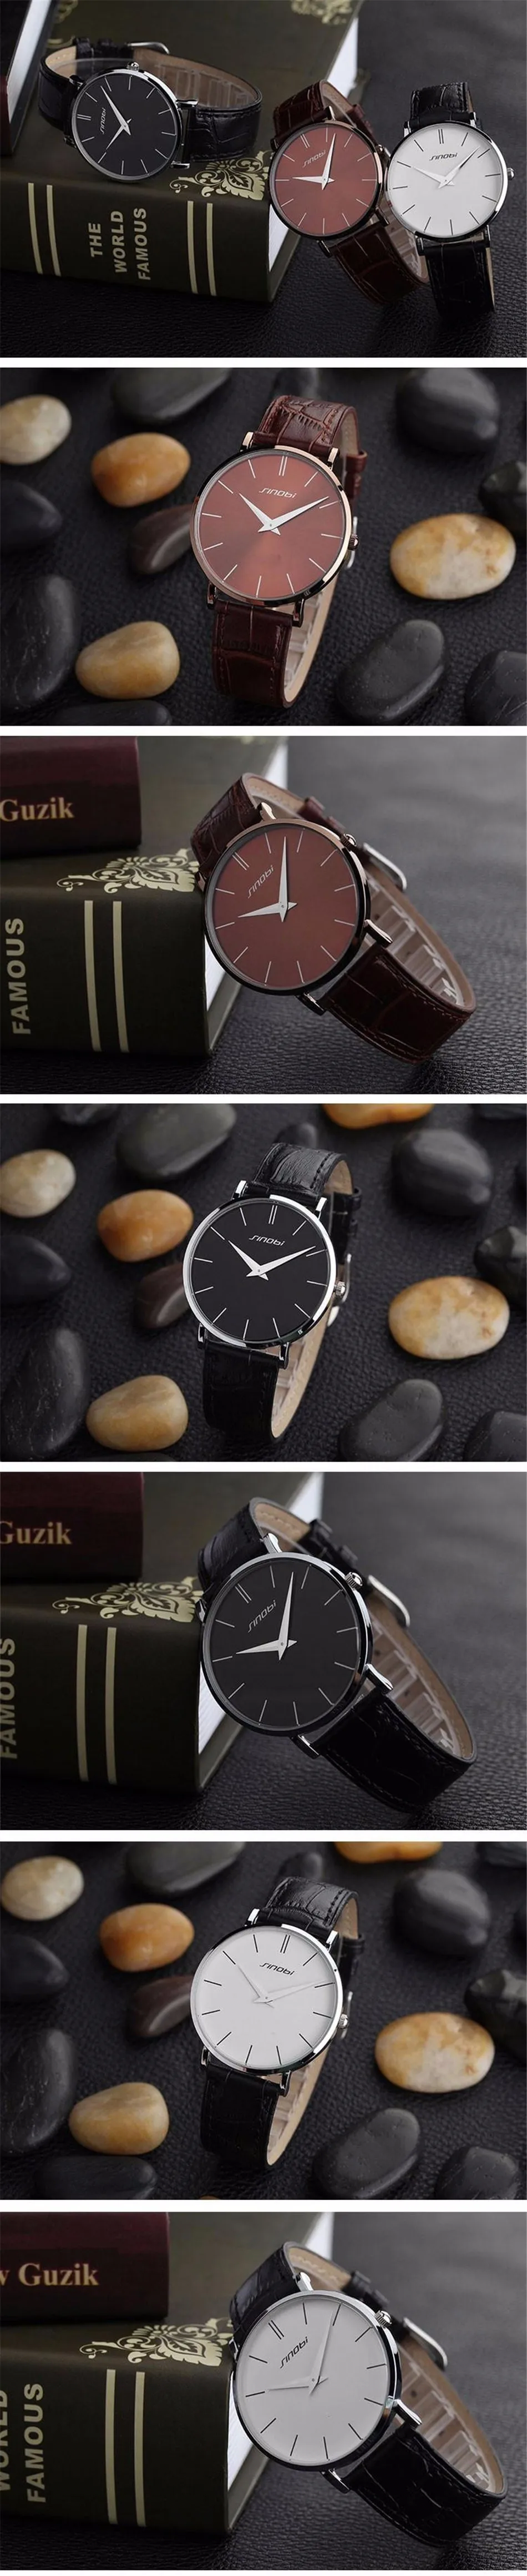 Sinobi, супер тонкий дизайн, кожа, для мужчин и женщин, лучшие кварцевые наручные часы, брендовые роскошные часы, кварцевые часы, наручные часы, relogio masculino